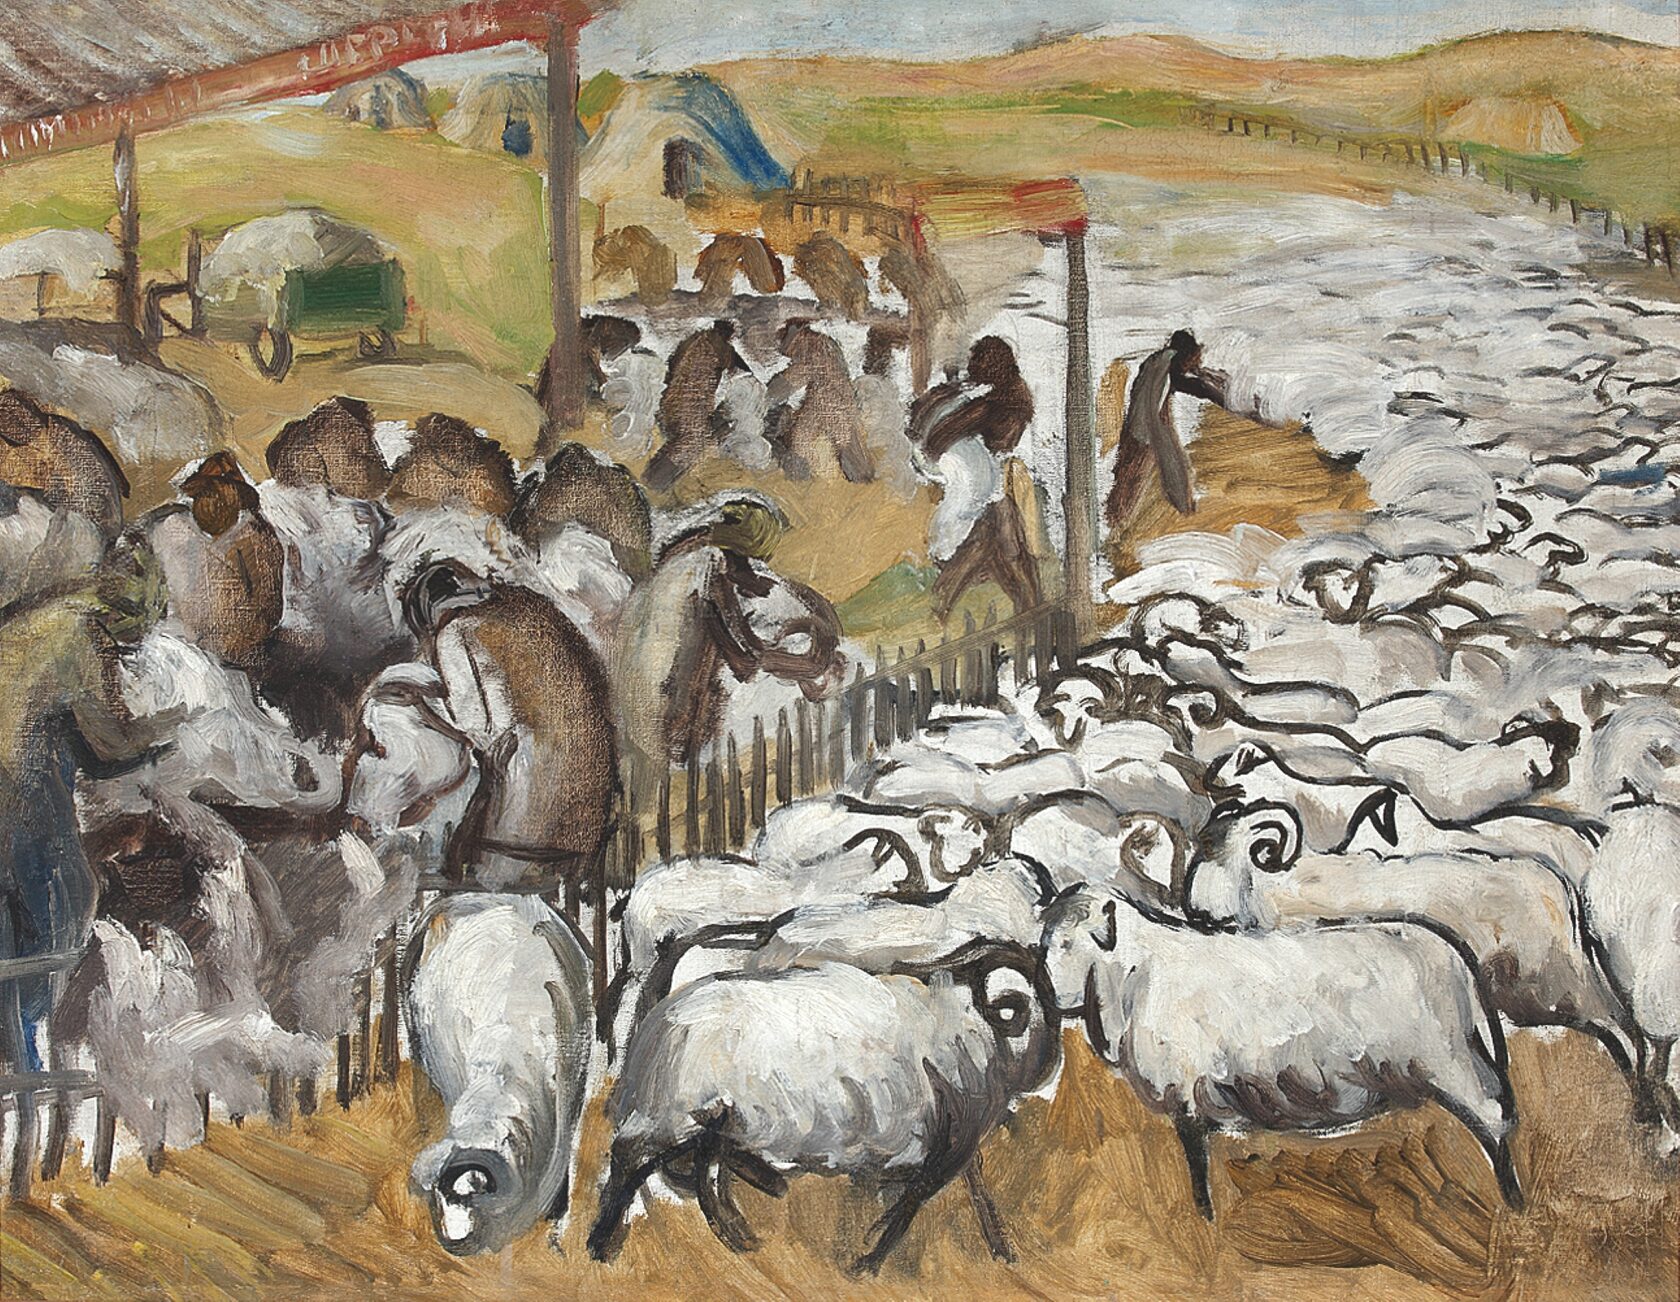  Стрижка овец. Племхоз № 1 в Дагестане (оборот работы «Ожидание»). 1930 